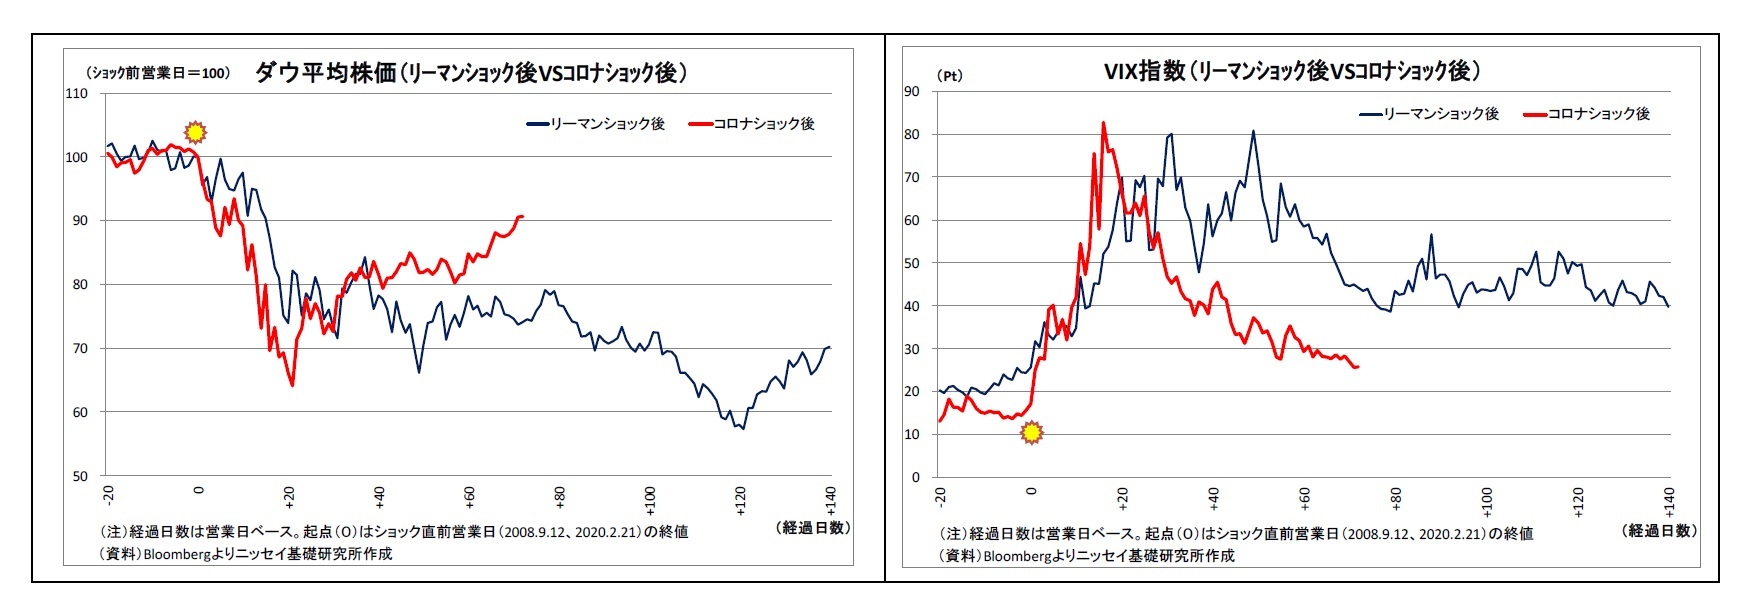 ダウ平均株価（ﾘｰﾏﾝｼｮｯｸ後VSｺﾛﾅｼｮｯｸ後）/VIX指数（ﾘｰﾏﾝｼｮｯｸ後VSｺﾛﾅｼｮｯｸ後）